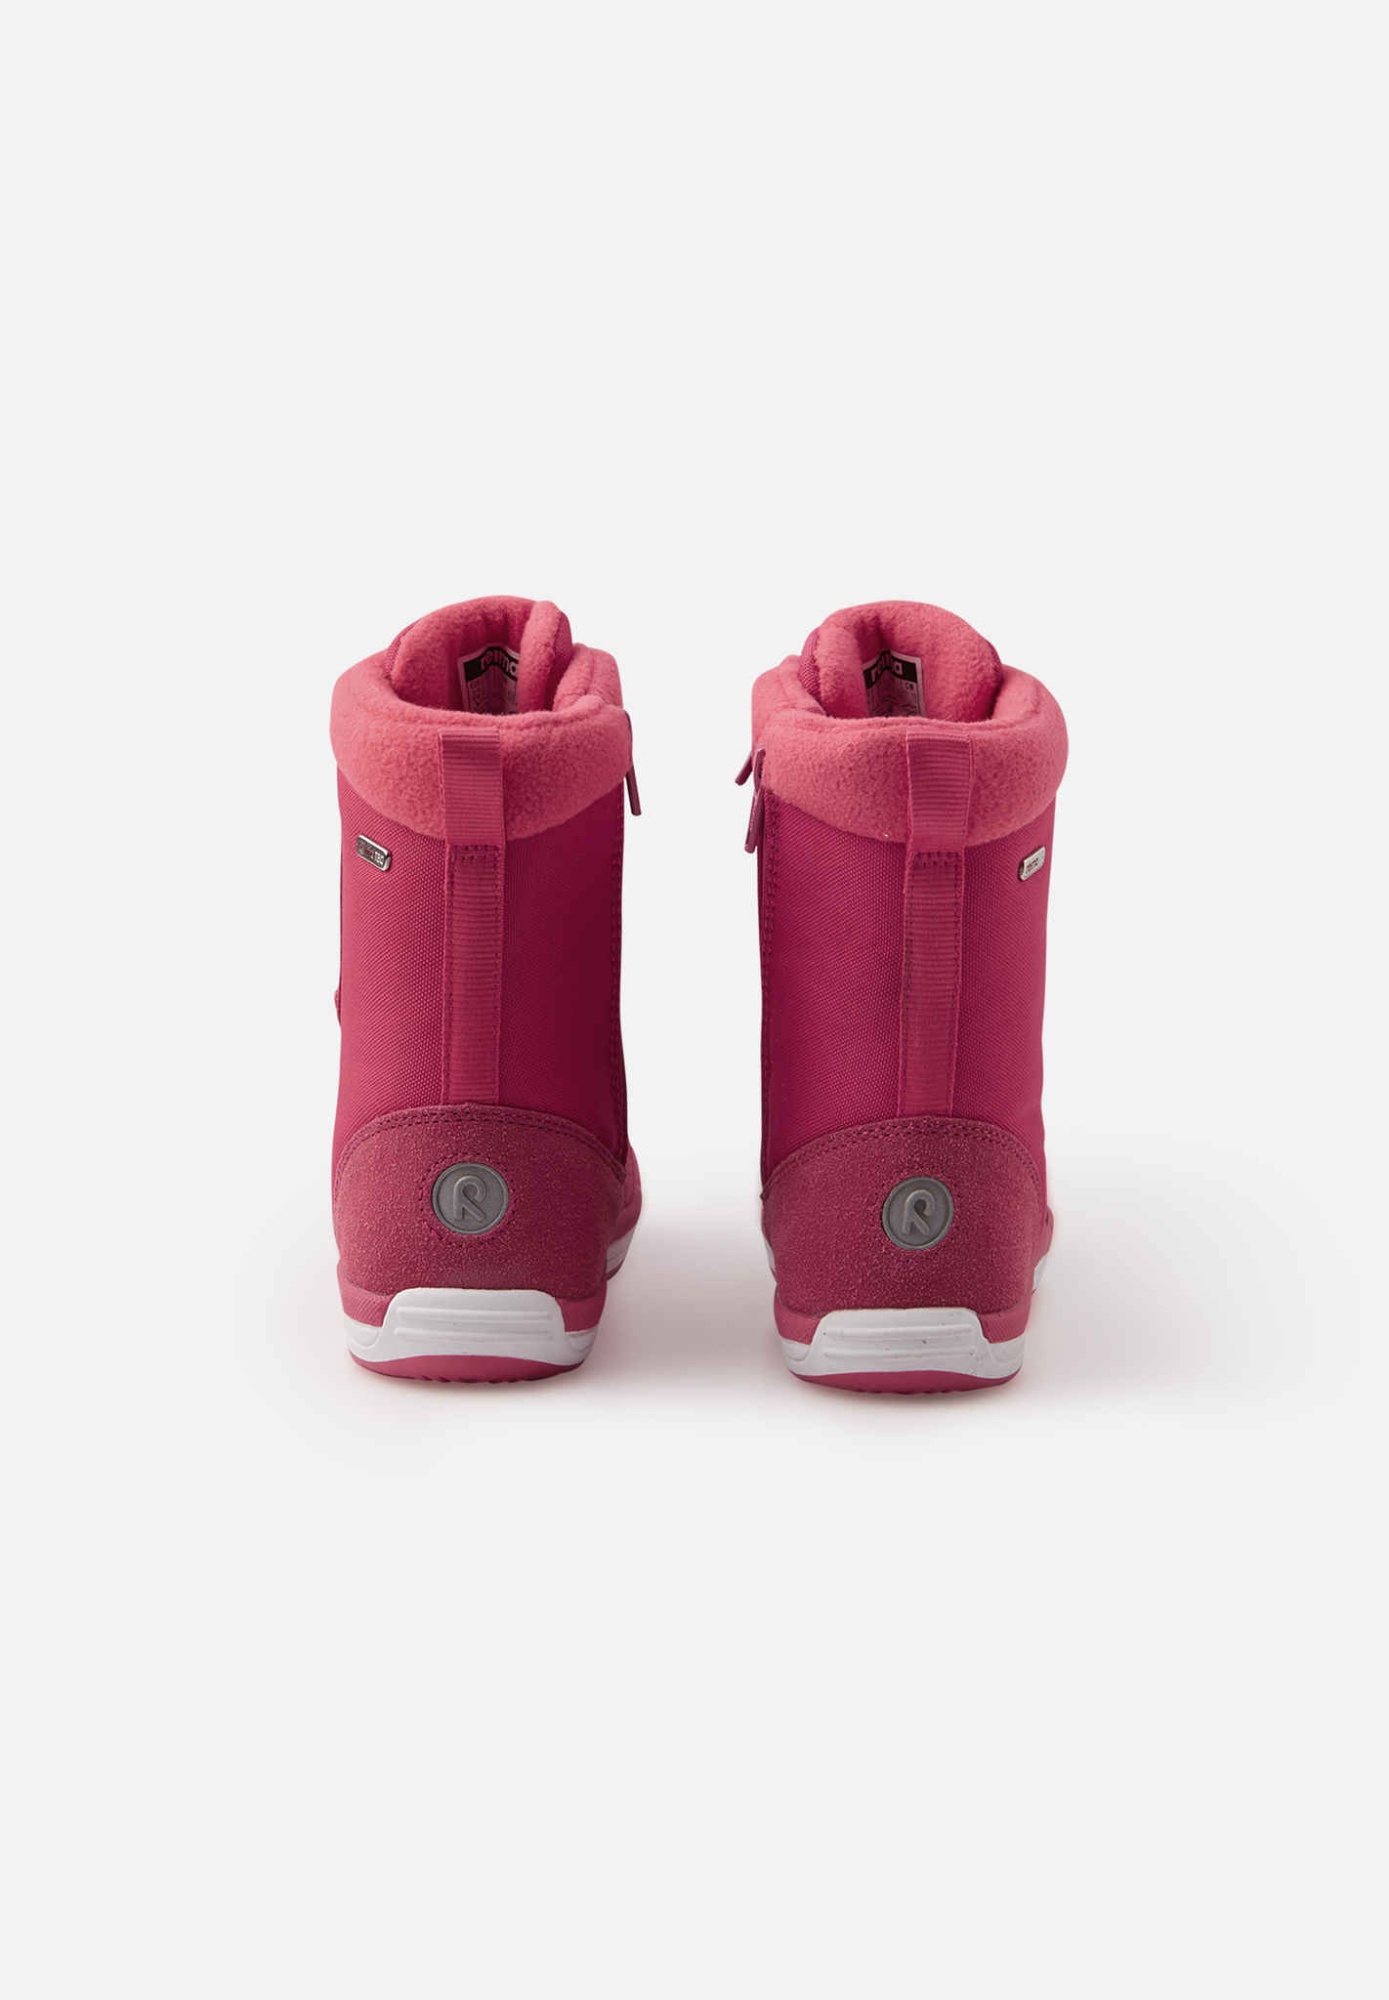 Зимние ботинки Reimatec Reima Freddo Розовые | фото